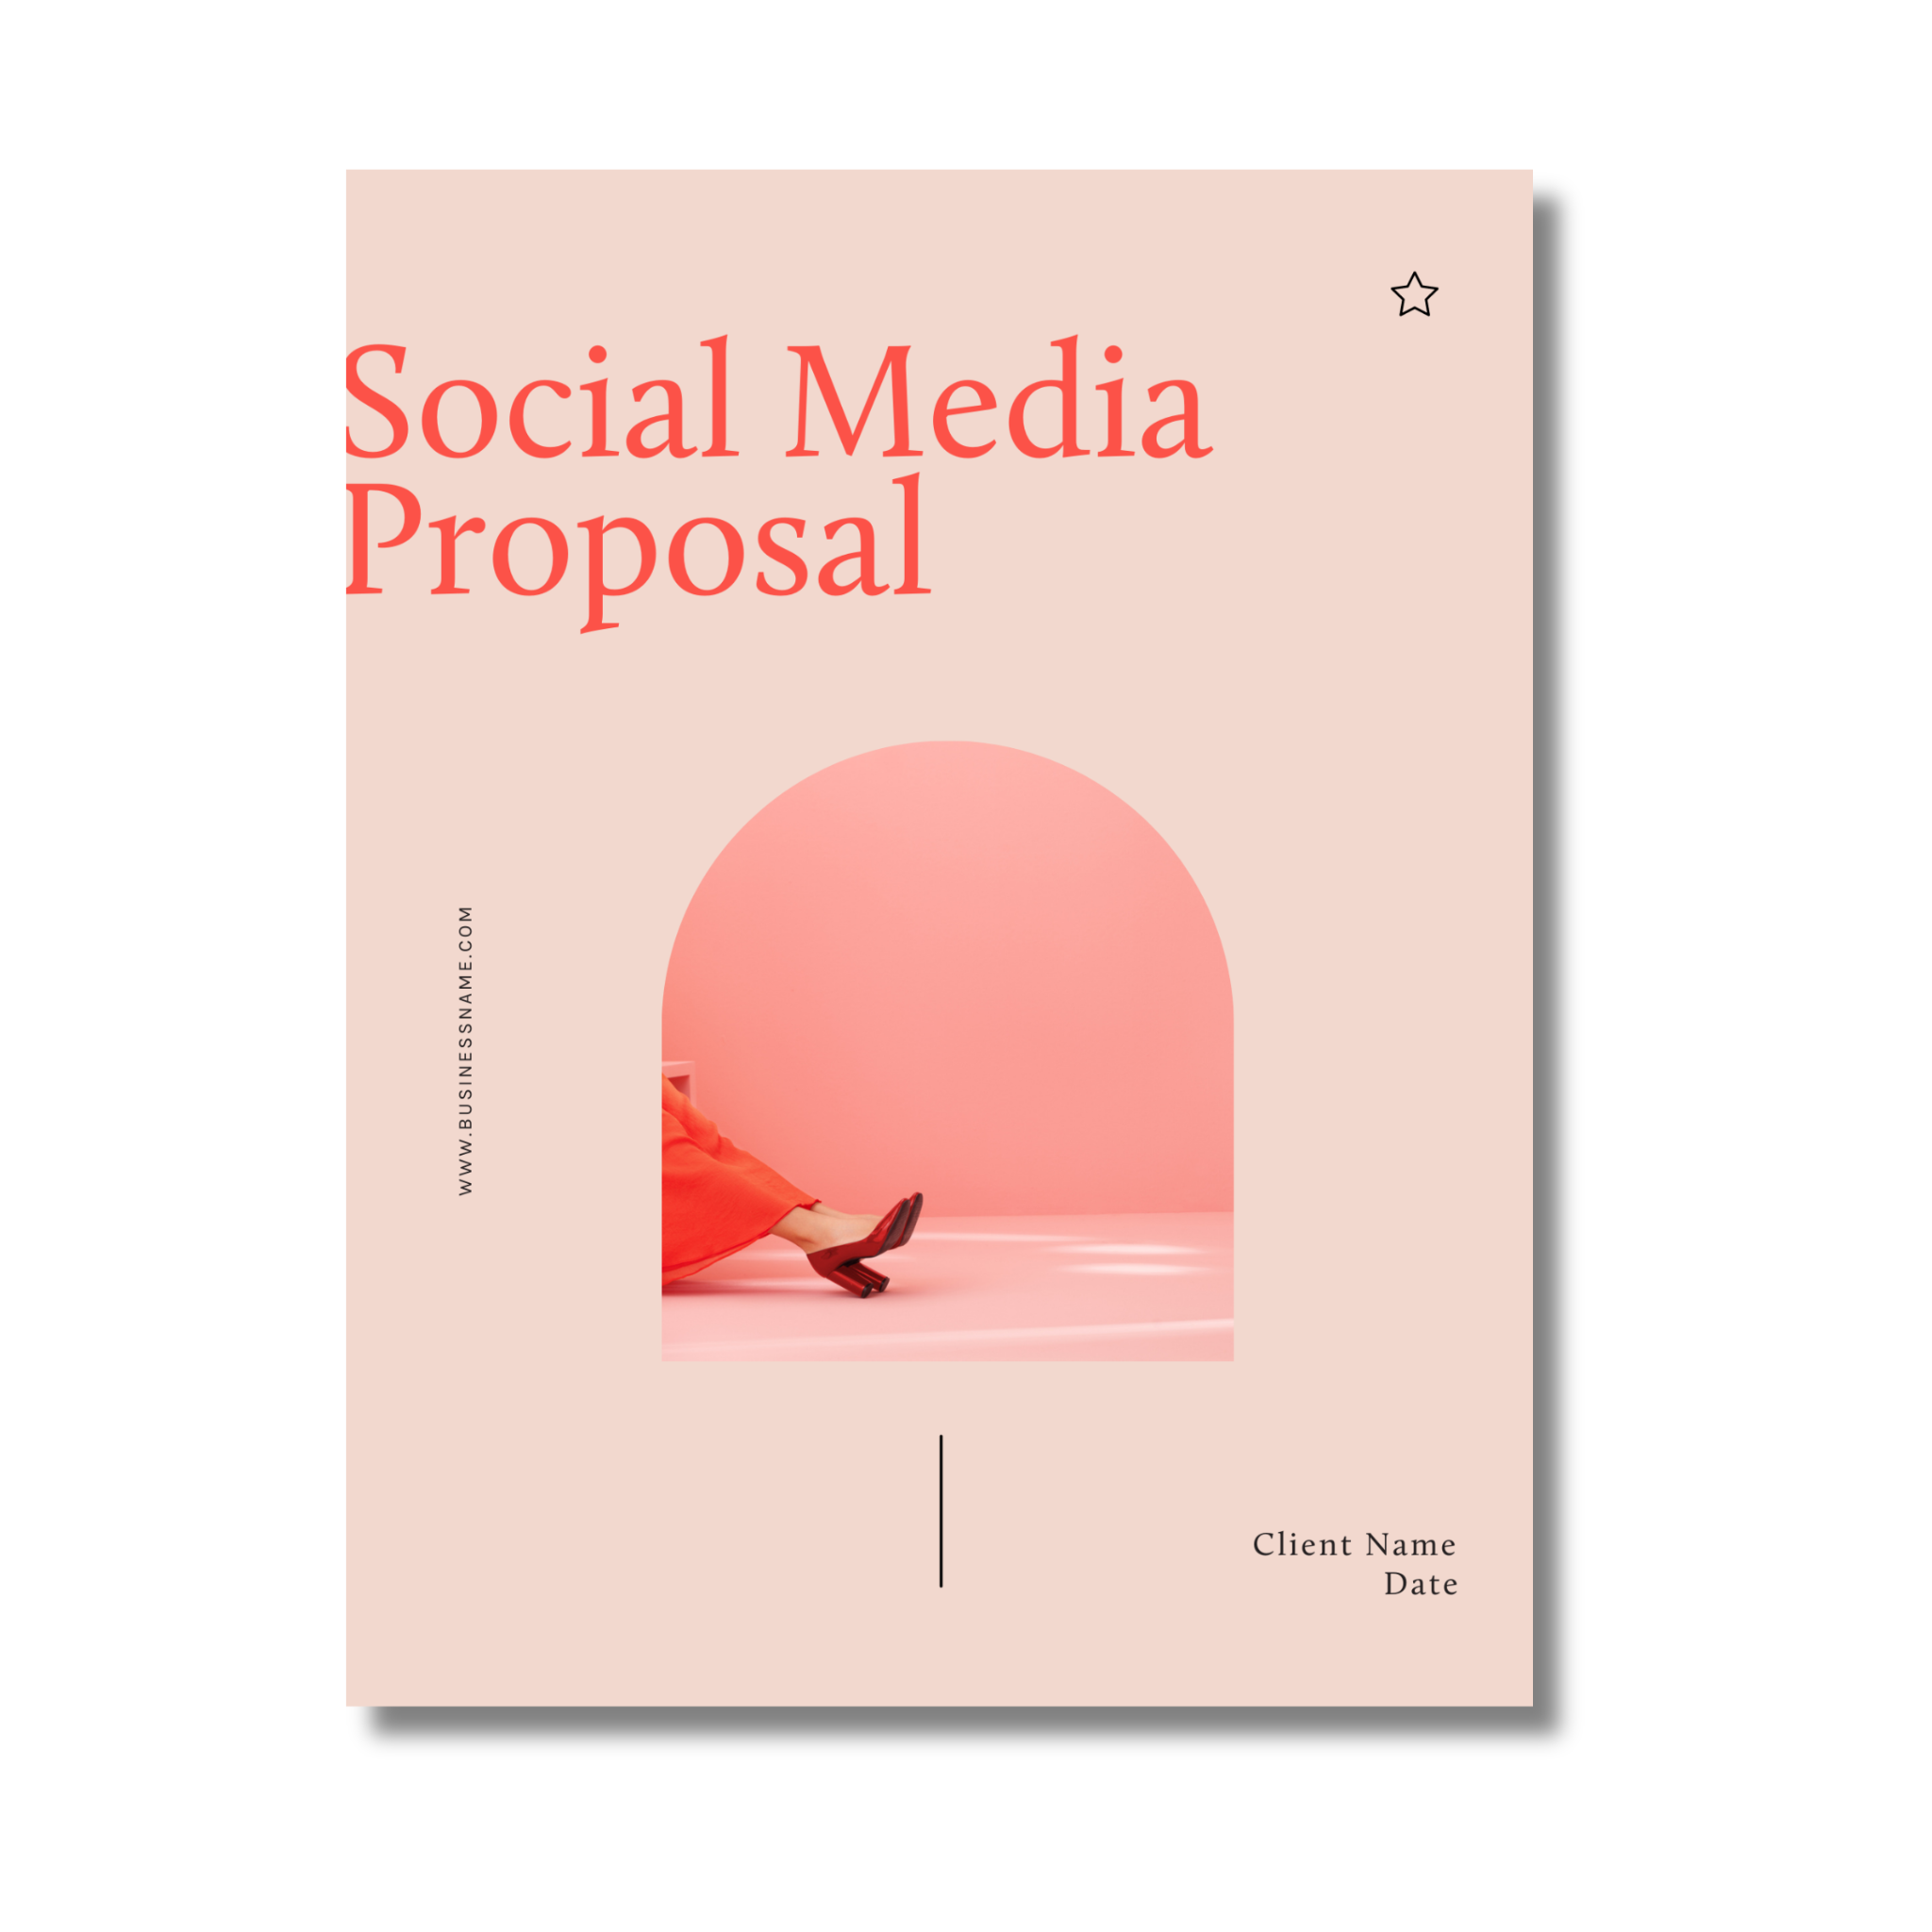 Social Media Proposal Template - New Originals